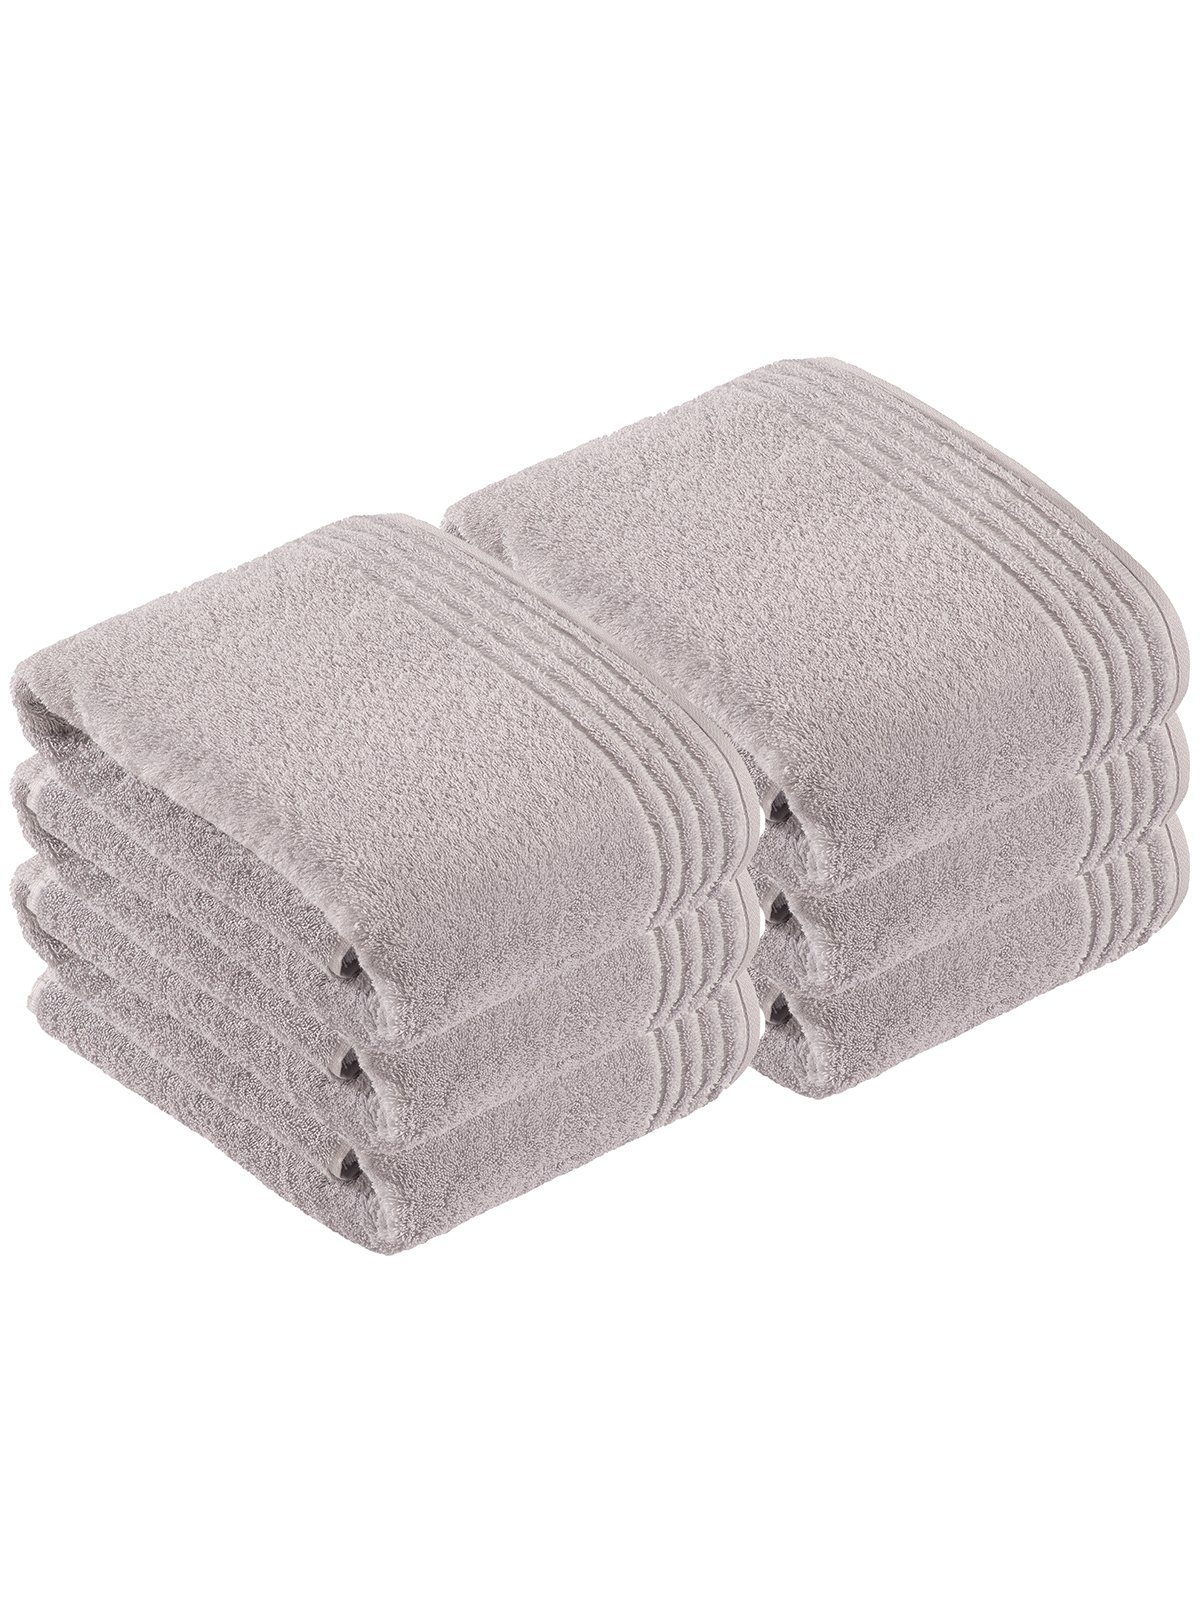 Graue Vossen Handtücher online kaufen | OTTO